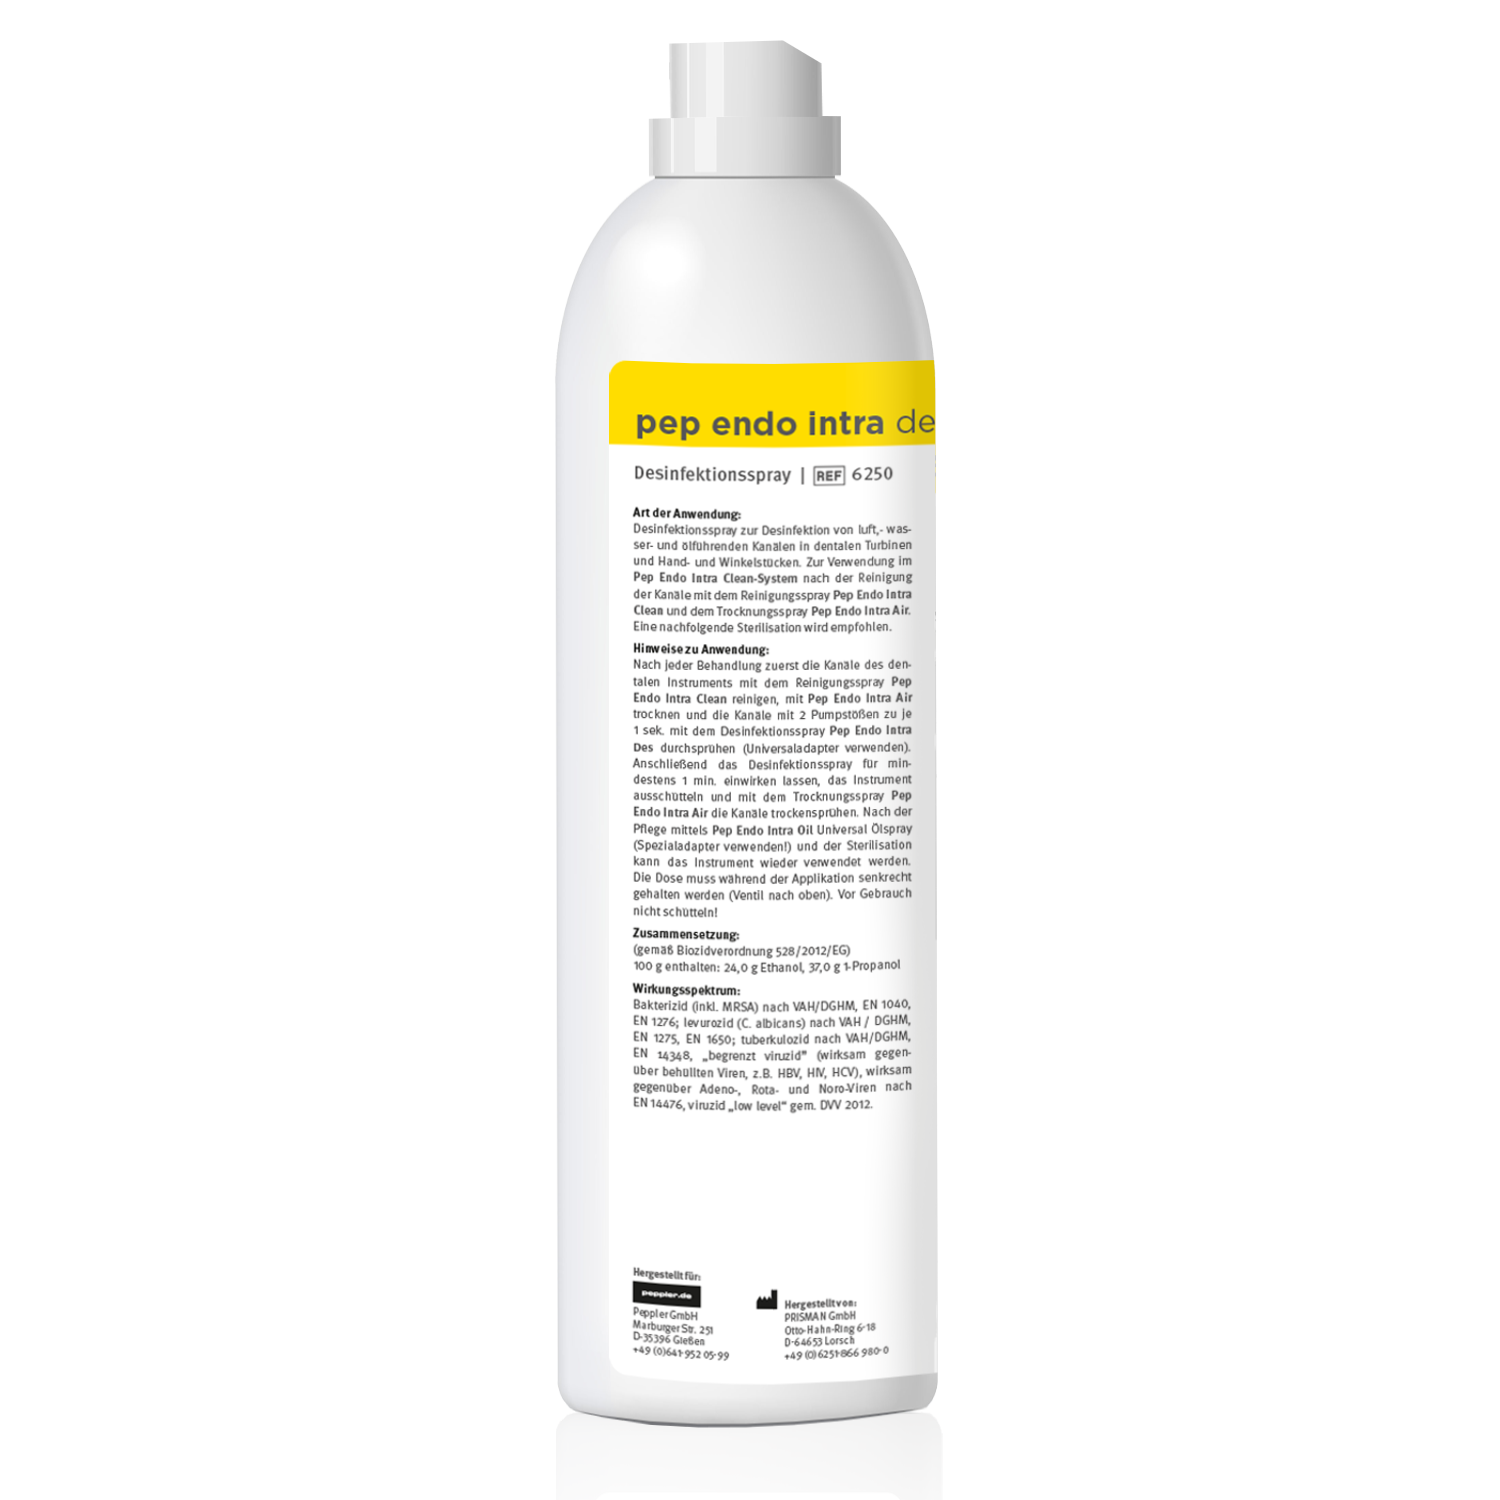 pep endo intra DES - Desinfektionsspray für wasser-, luft- und ölführende Kanäle in dentalen Turbinen und Hand- und Winkelstücken, 500 ml